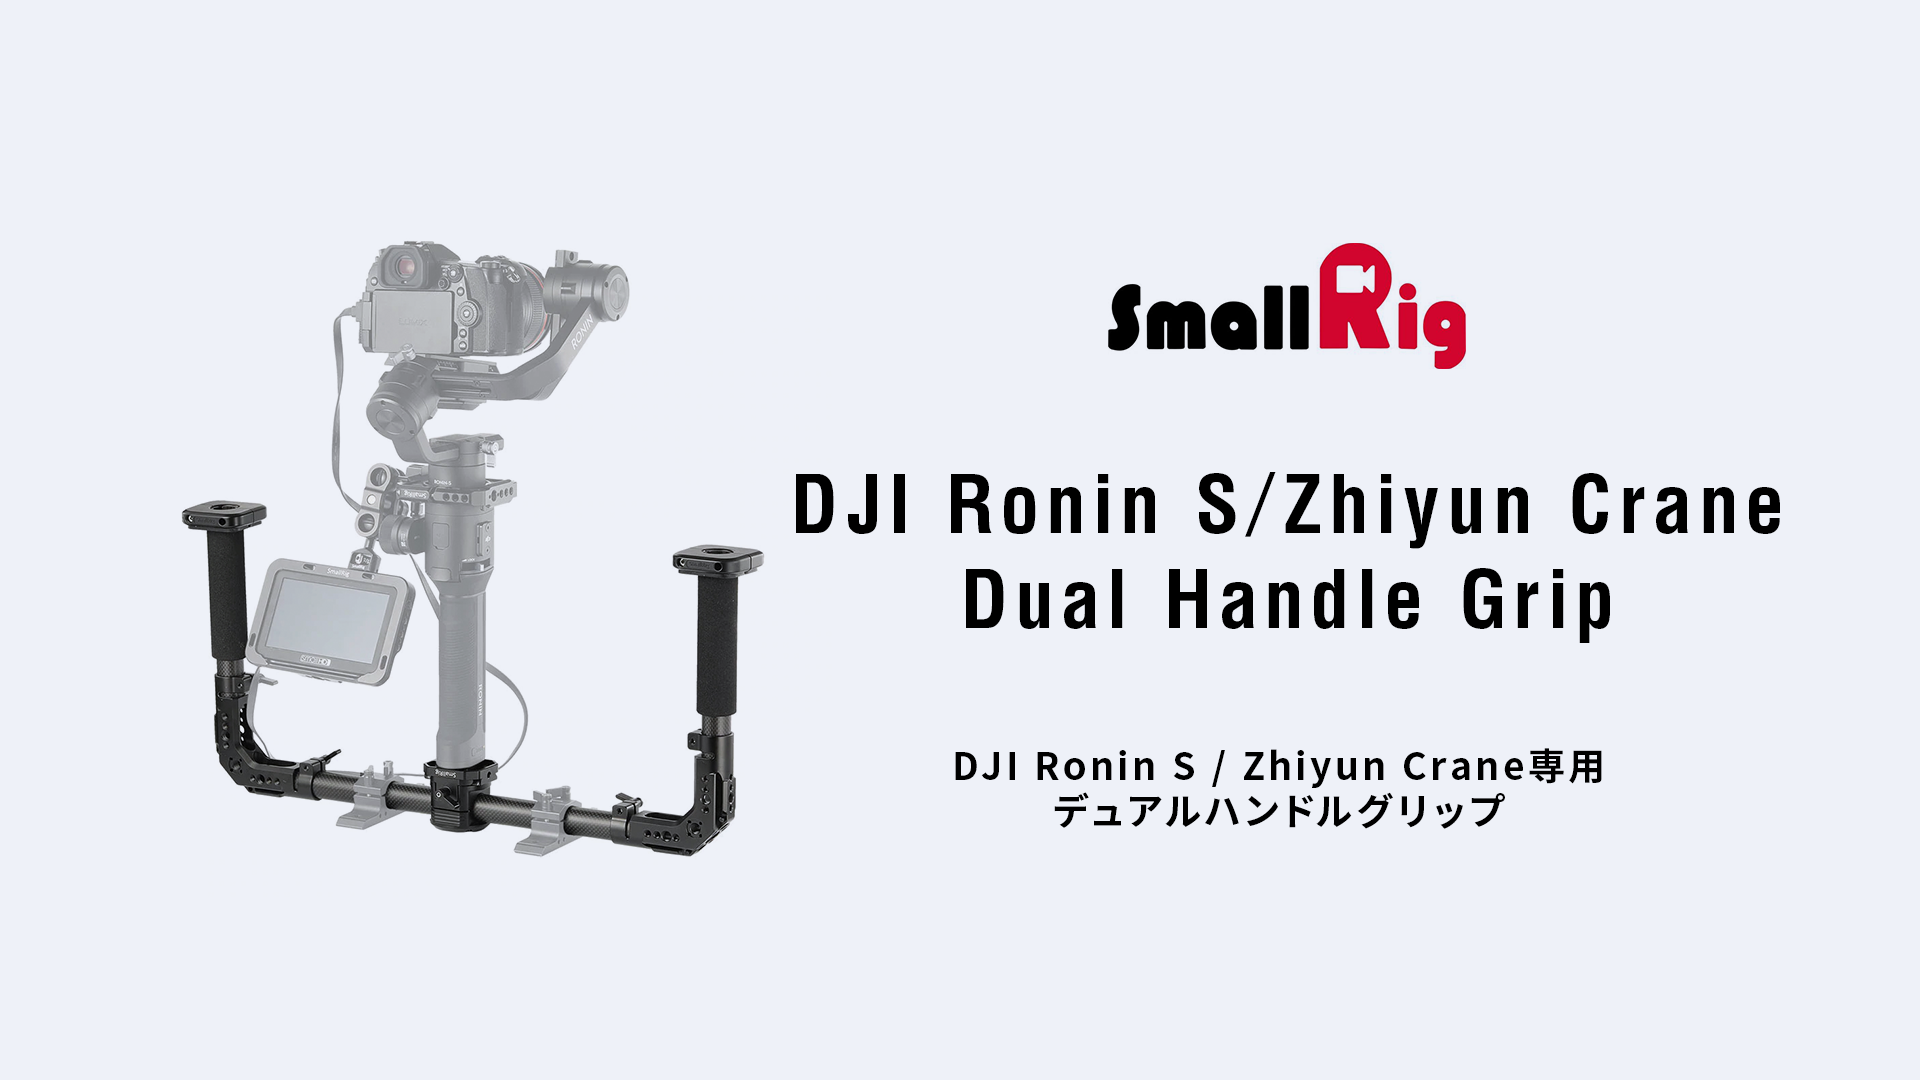 レンタル] SmallRig DJI Ronin S / Zhiyun Crane専用デュアルハンド